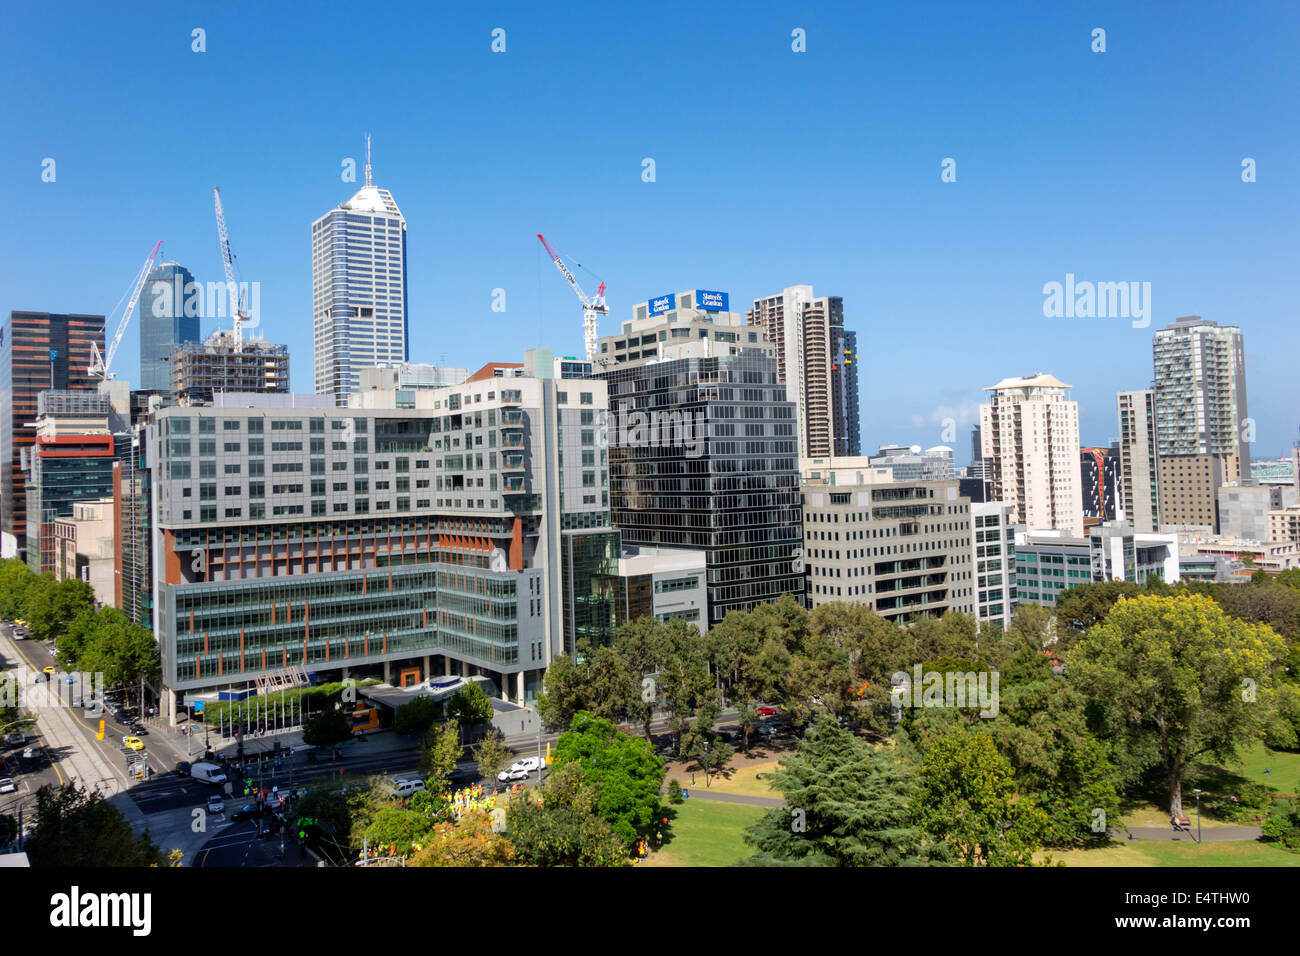 Melbourne Australia, William Street, alto, edifici, grattacieli, skyline della città, gru edili, Flagstaff Gardens, pubblico, parco, AU140319005 Foto Stock